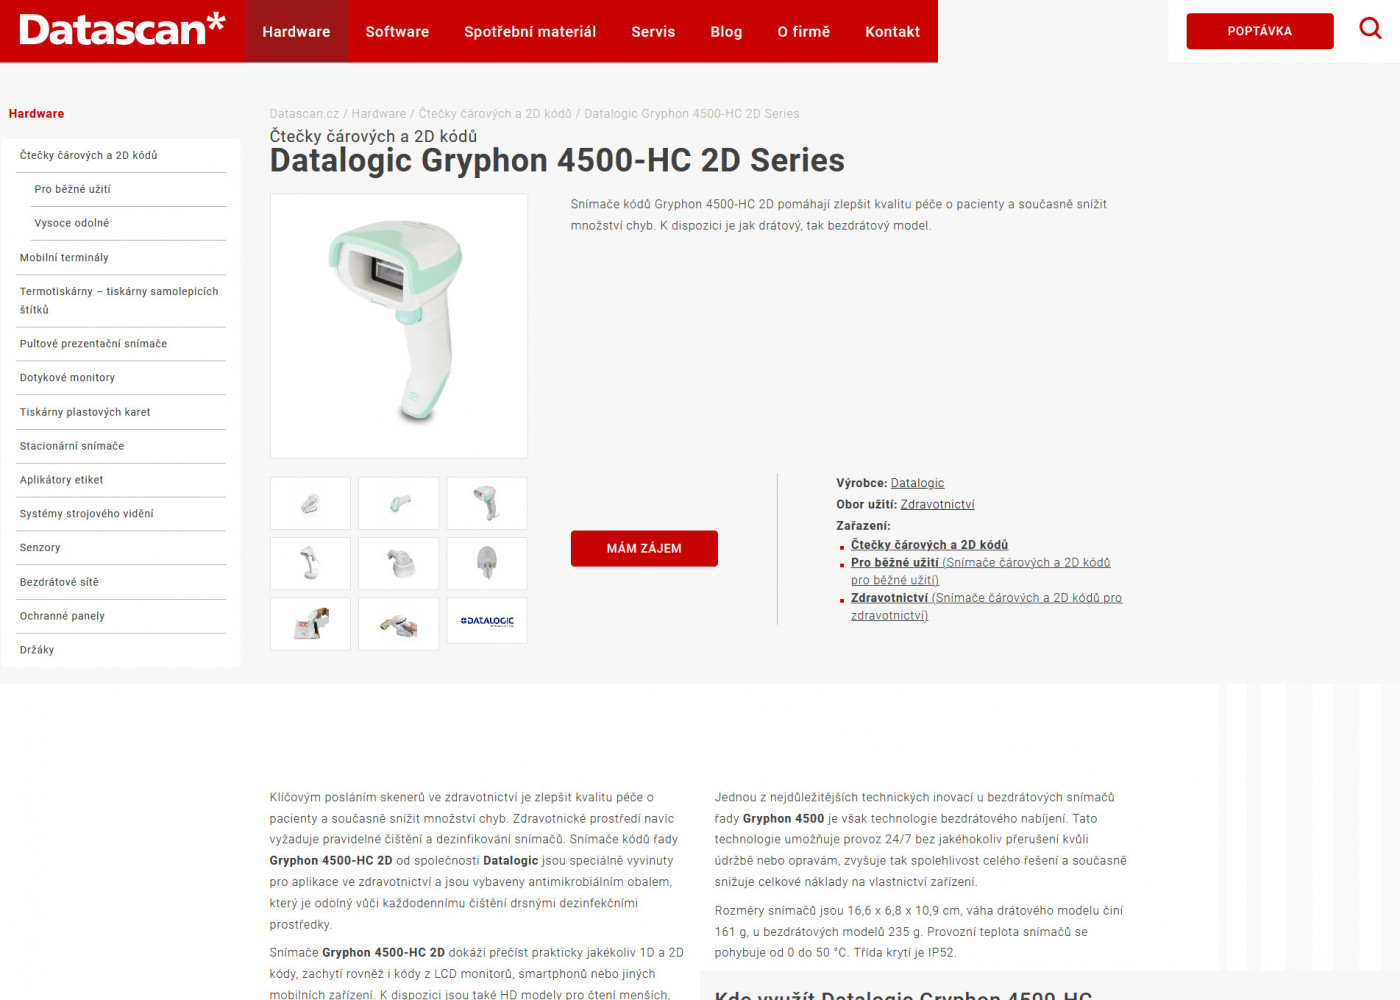 Tvorba nového webu Datascan.cz - Porovnání, nová verze  #2